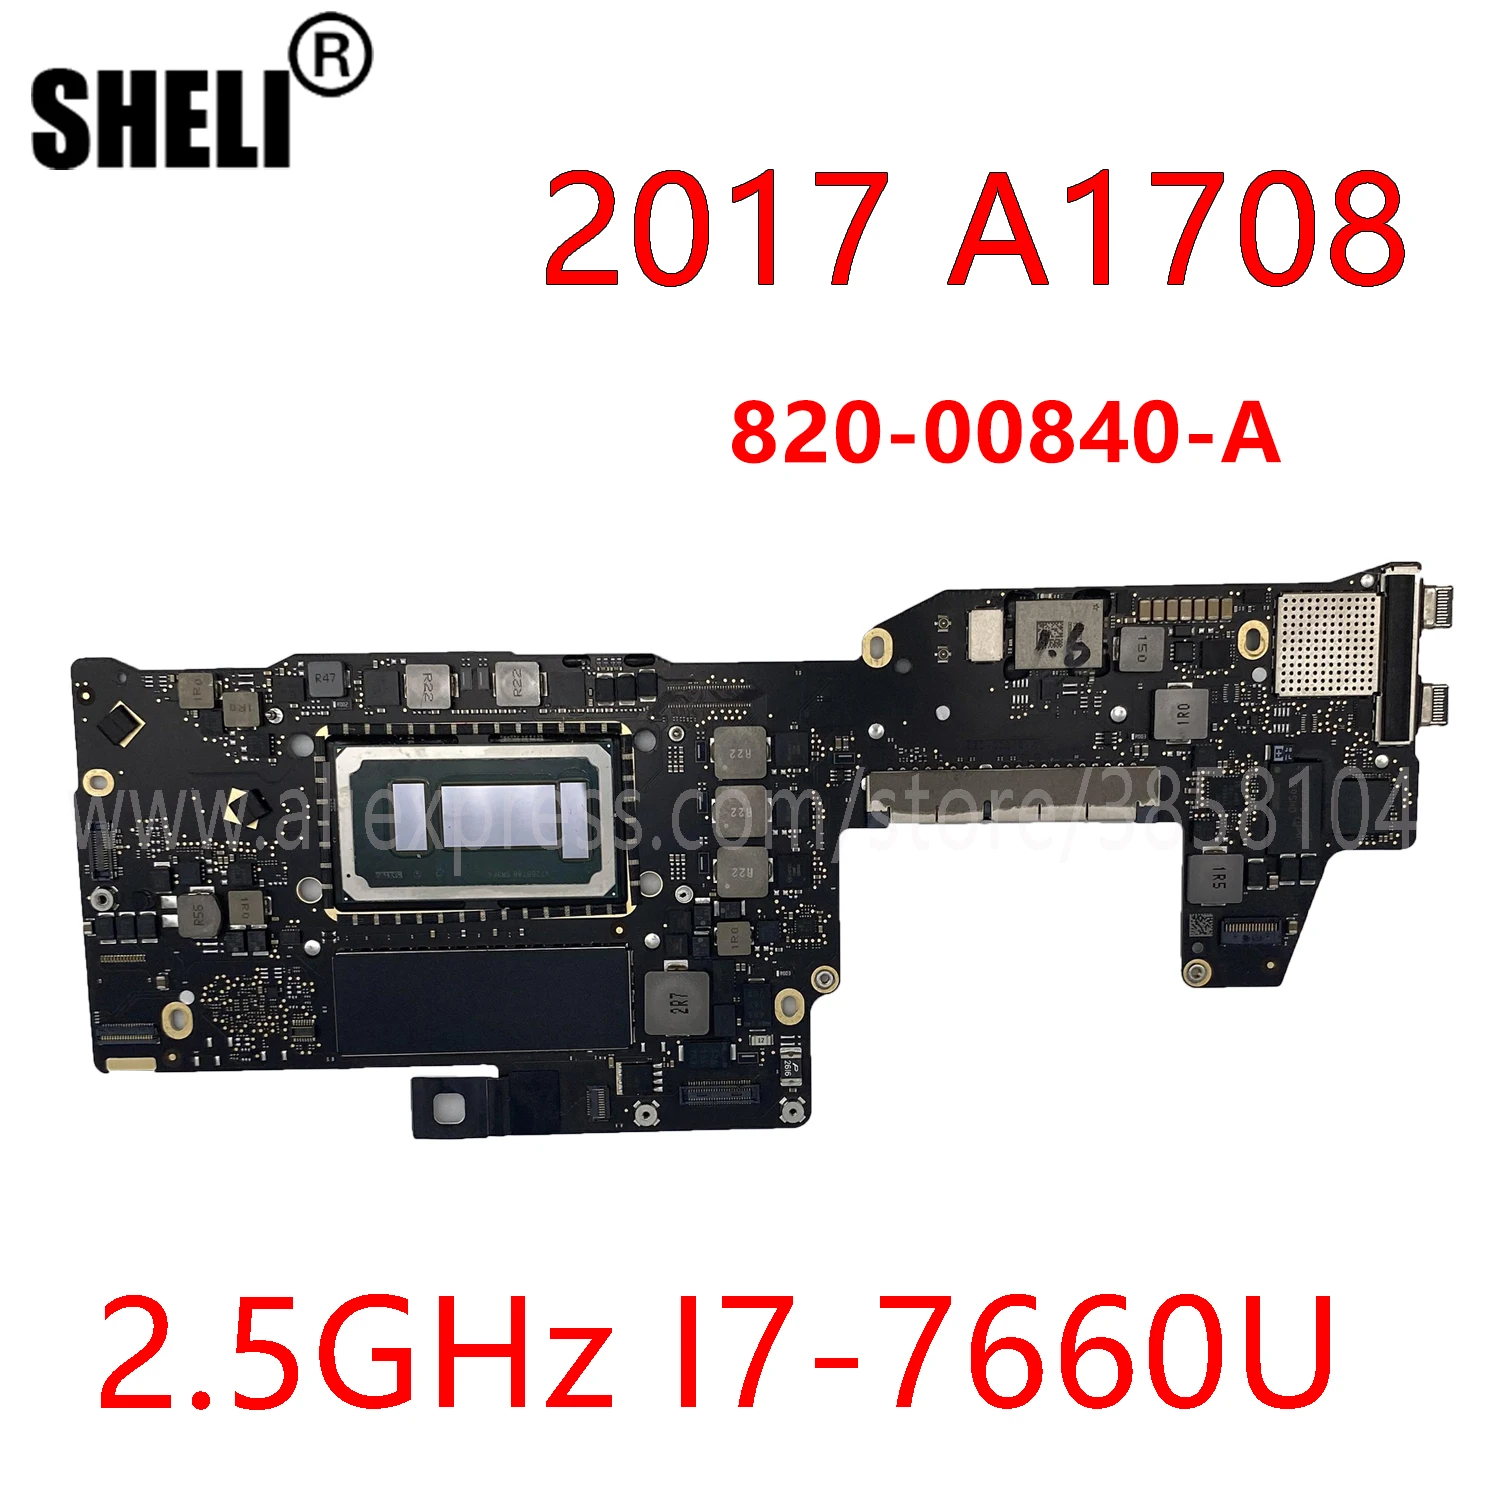 Scheda madre 2017 A1708 per MacBook Pro 13 "A1708 scheda logica con CPU I7 2.5Ghz 16GB 820-00840-A